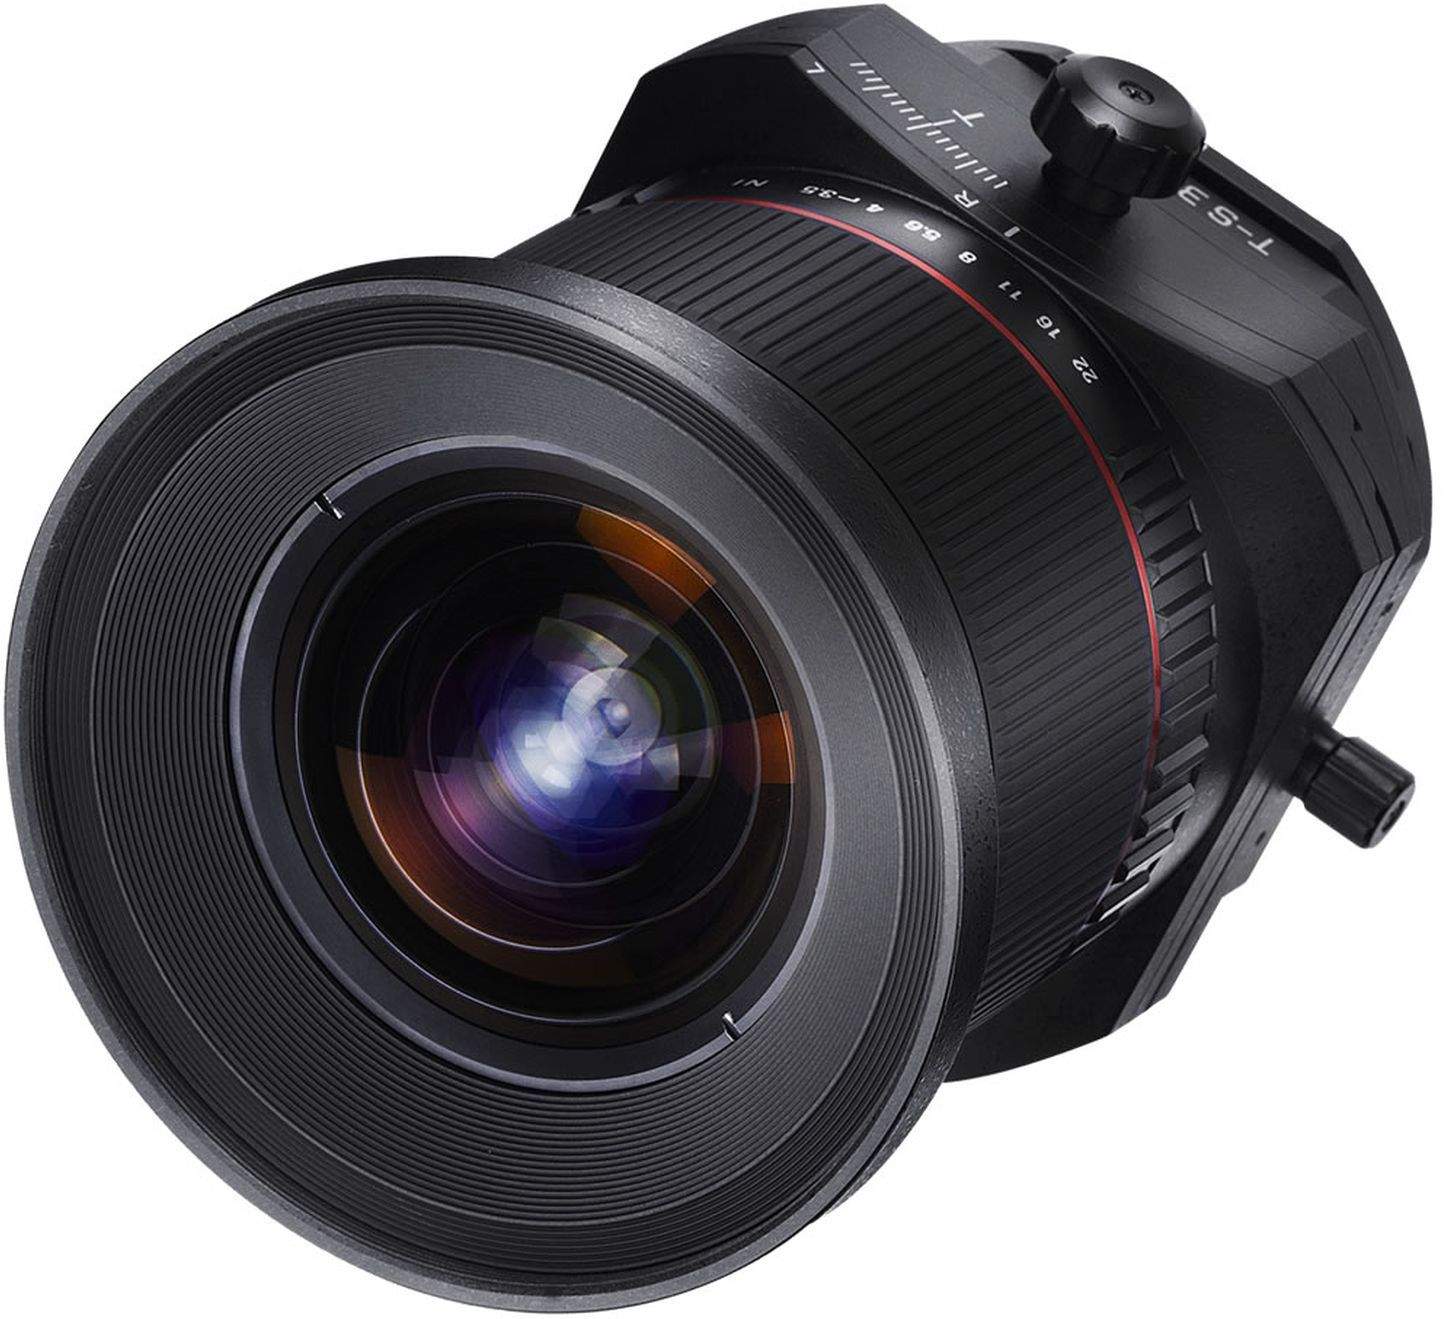 Samyang 24mm F3.5 Tilt & Shift ED AS UMC Canon EF Full Frame Camera Lens main image